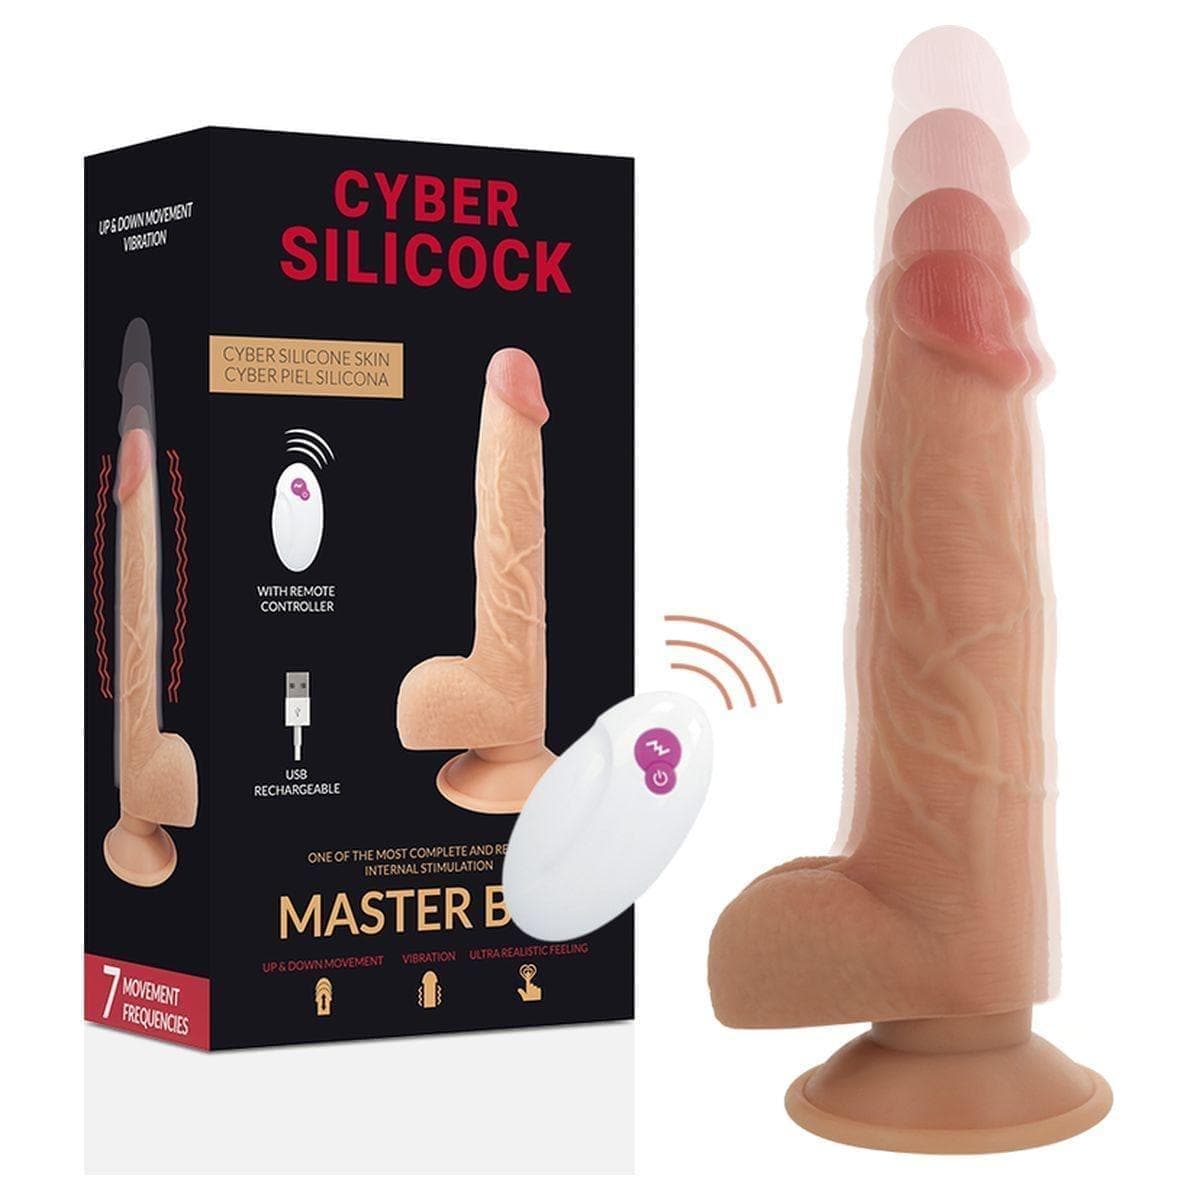 Cyber Silicock Master Ben USB Cima/Baixo com Vibração e Comando - 23,8 cm Ø4,3 cm - Pérola SexShop